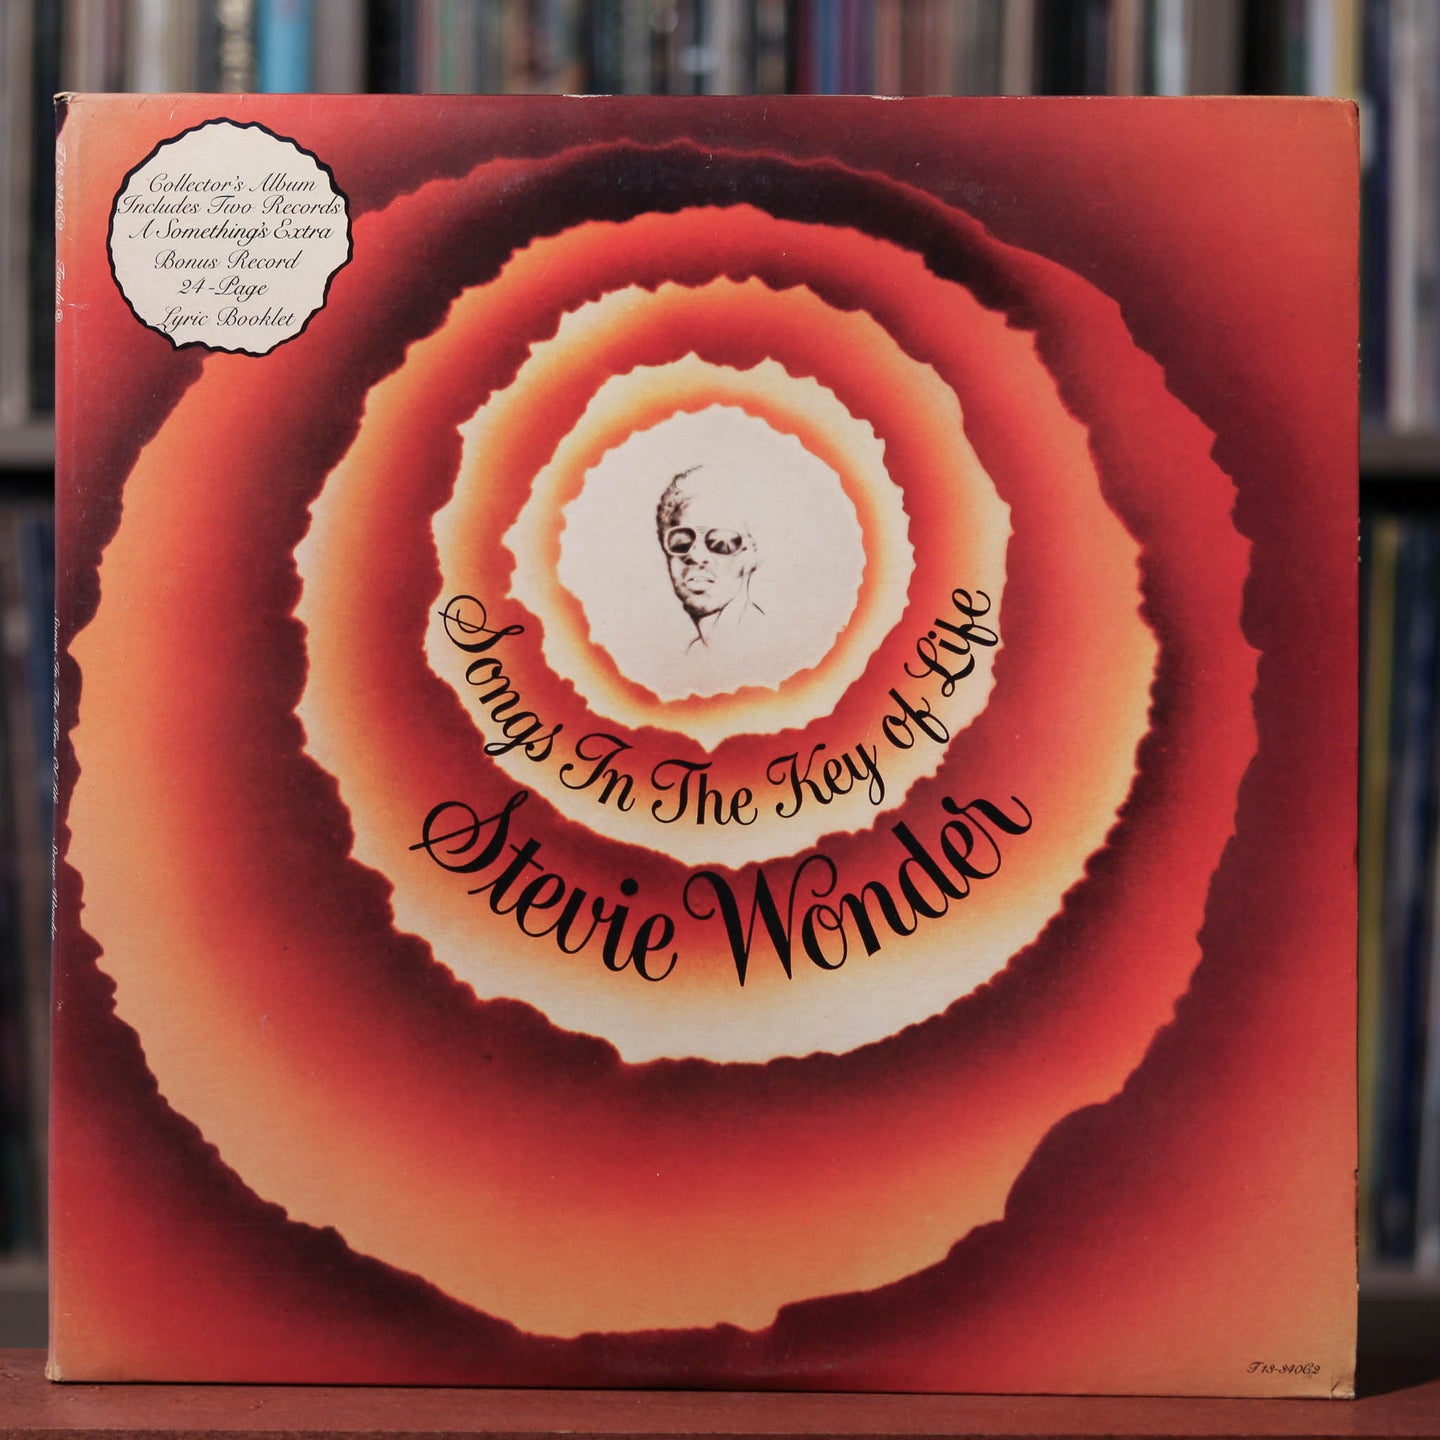 Stevie Wonder - Songs In The Key Of Life - 2LP - 1976 Tamla, VG+/EX w/Booklet